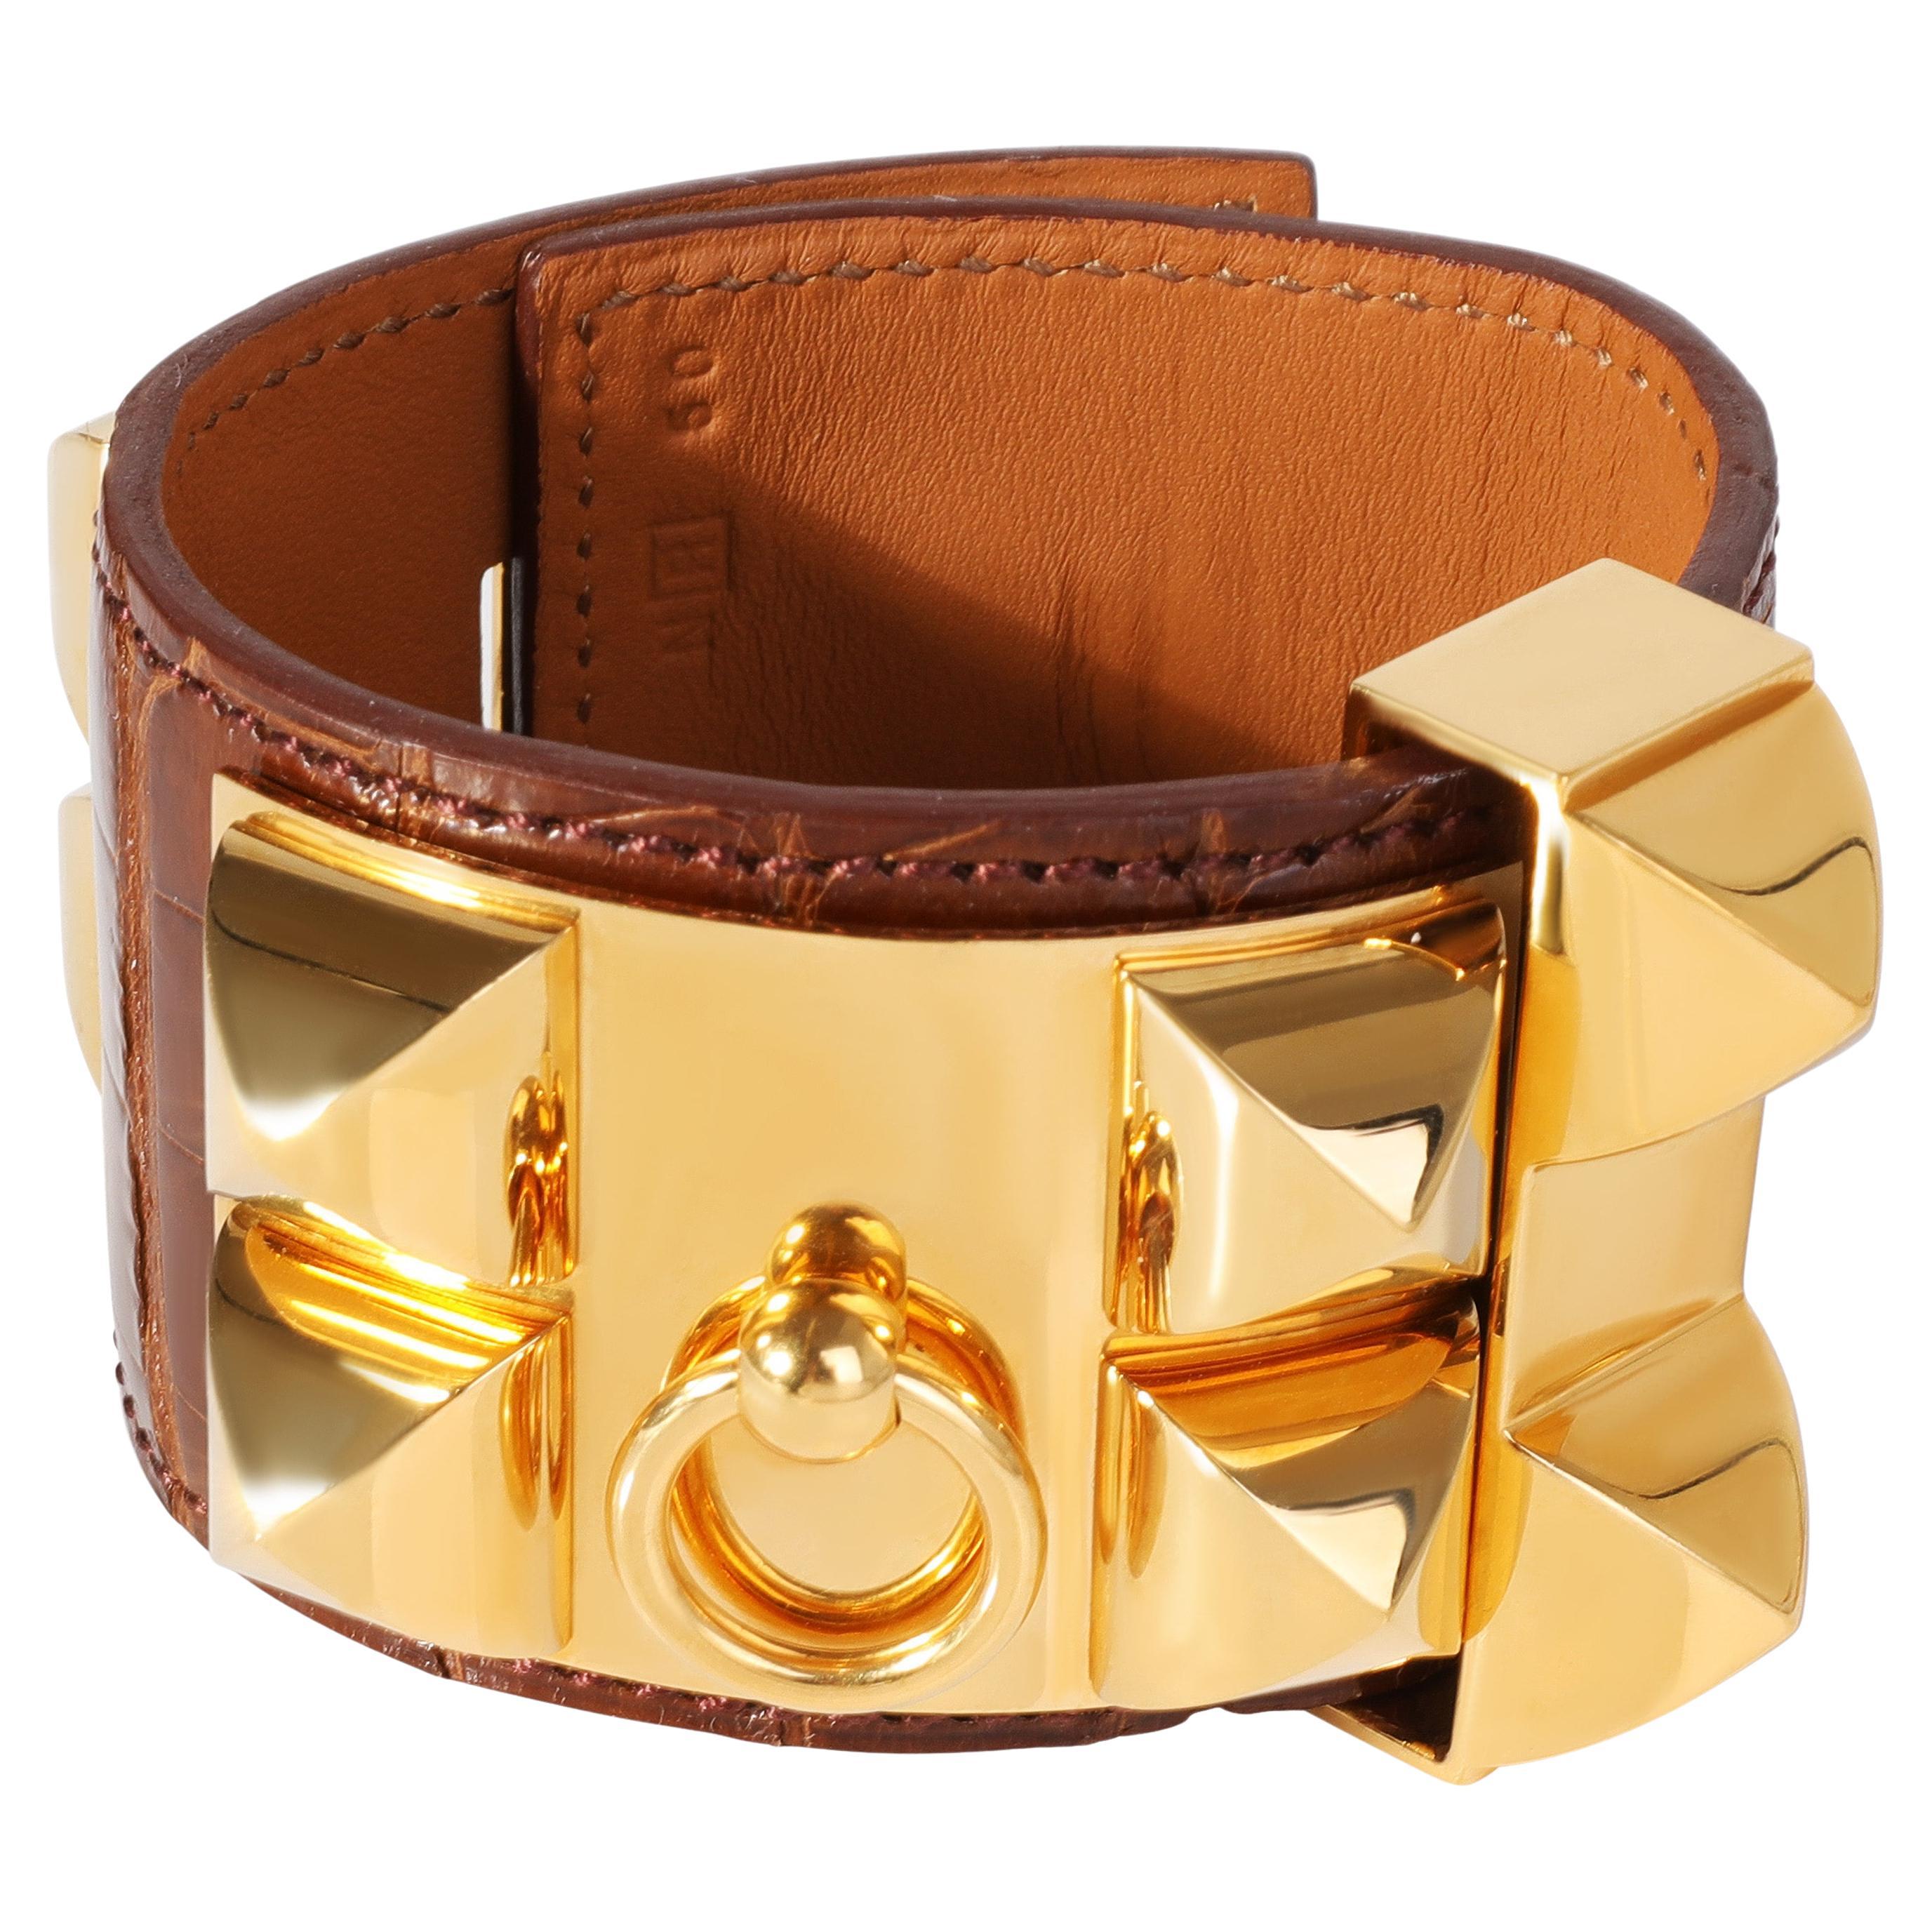 Hermès CDC Bracelet